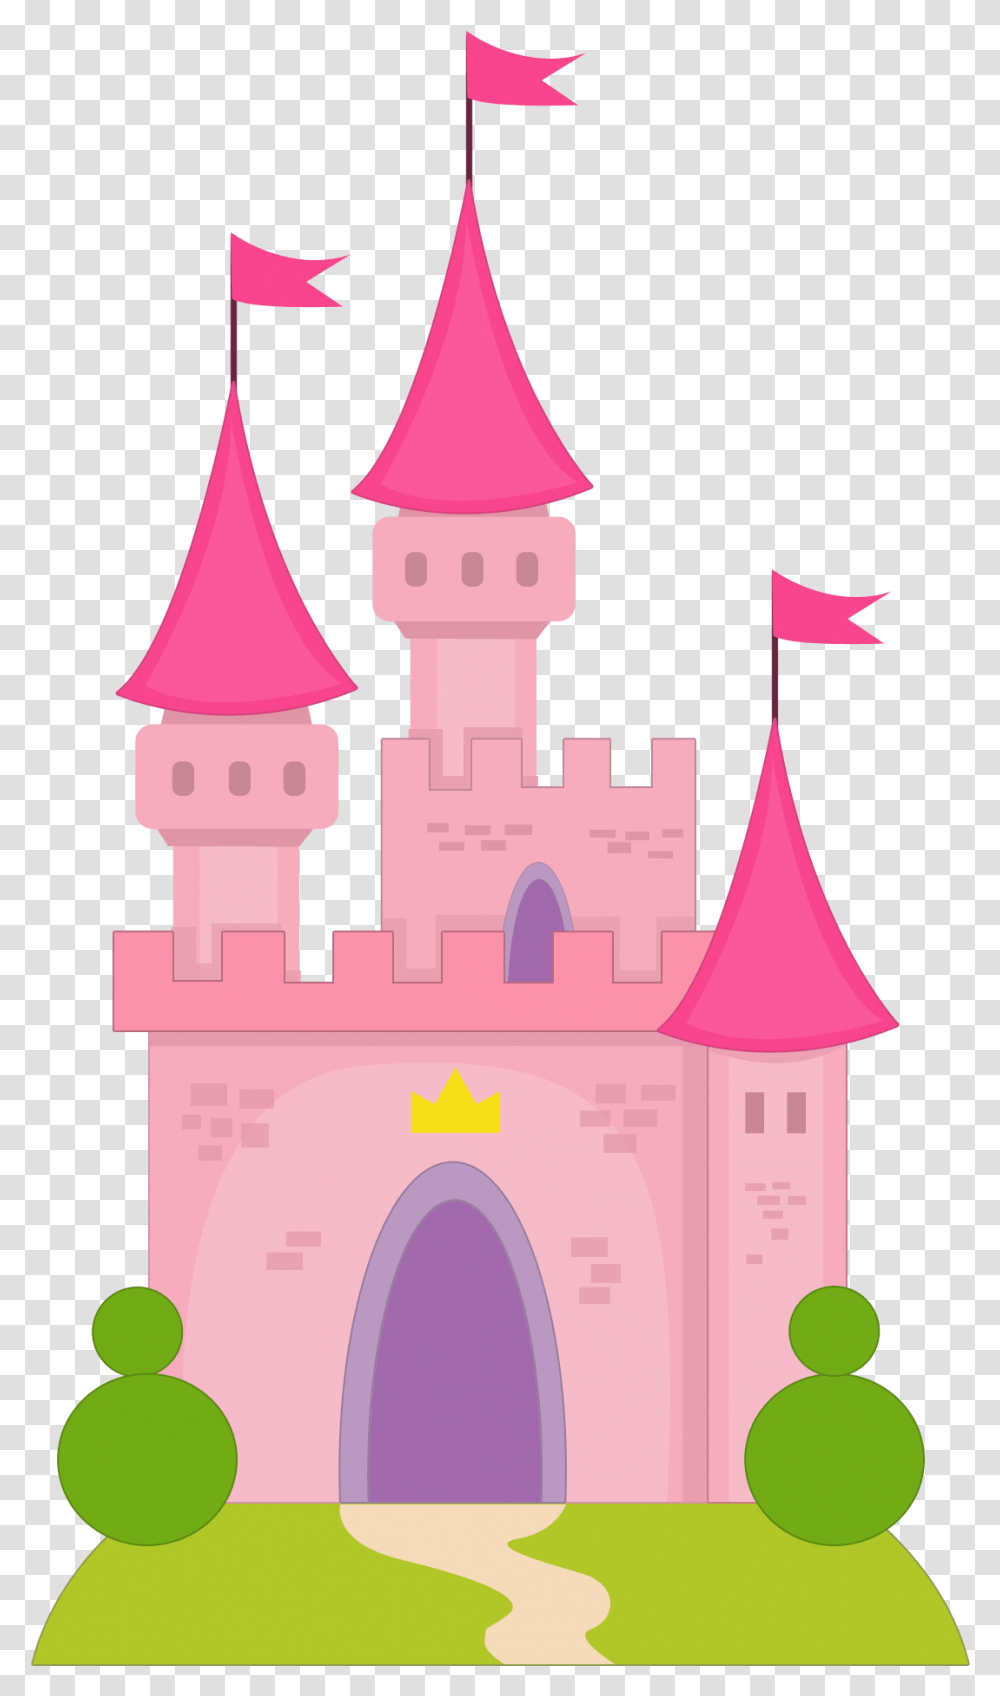 Princesas E Pr Ncipes Dibujo De Un Castillo De Princesas, Architecture, Building Transparent Png